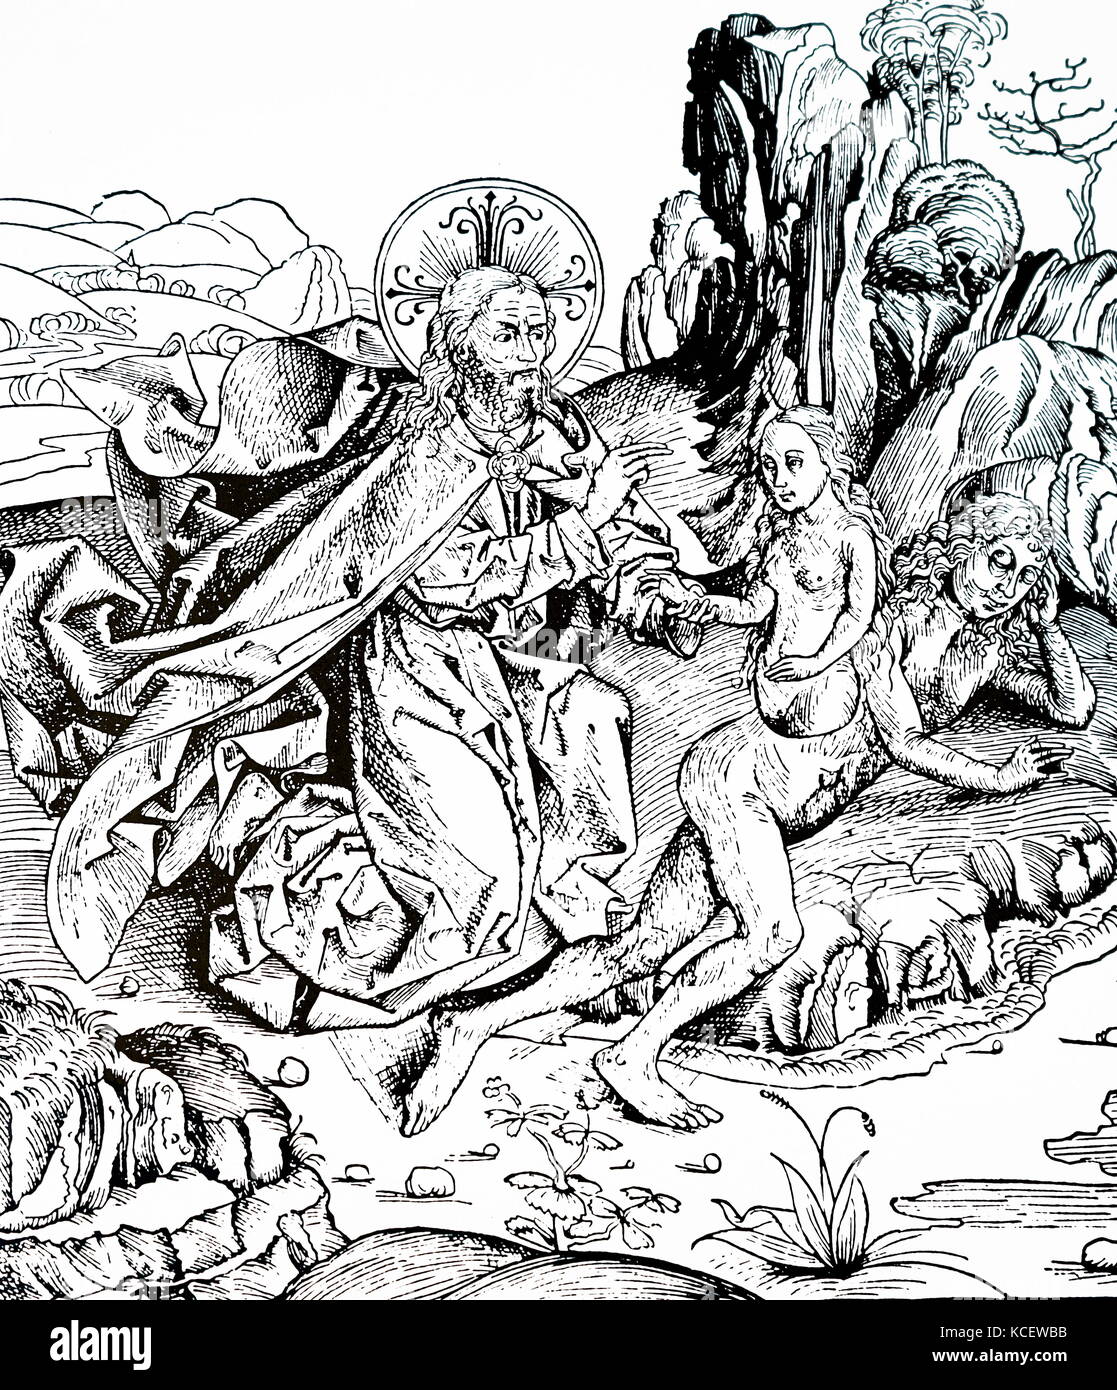 Incisione raffigurante la creazione di Adamo ed Eva dal Cronaca di Norimberga di Hartmann Schedel (1440-1514) un medico tedesco, umanista e storico, e uno dei primi cartografi. Datata xv secolo Foto Stock